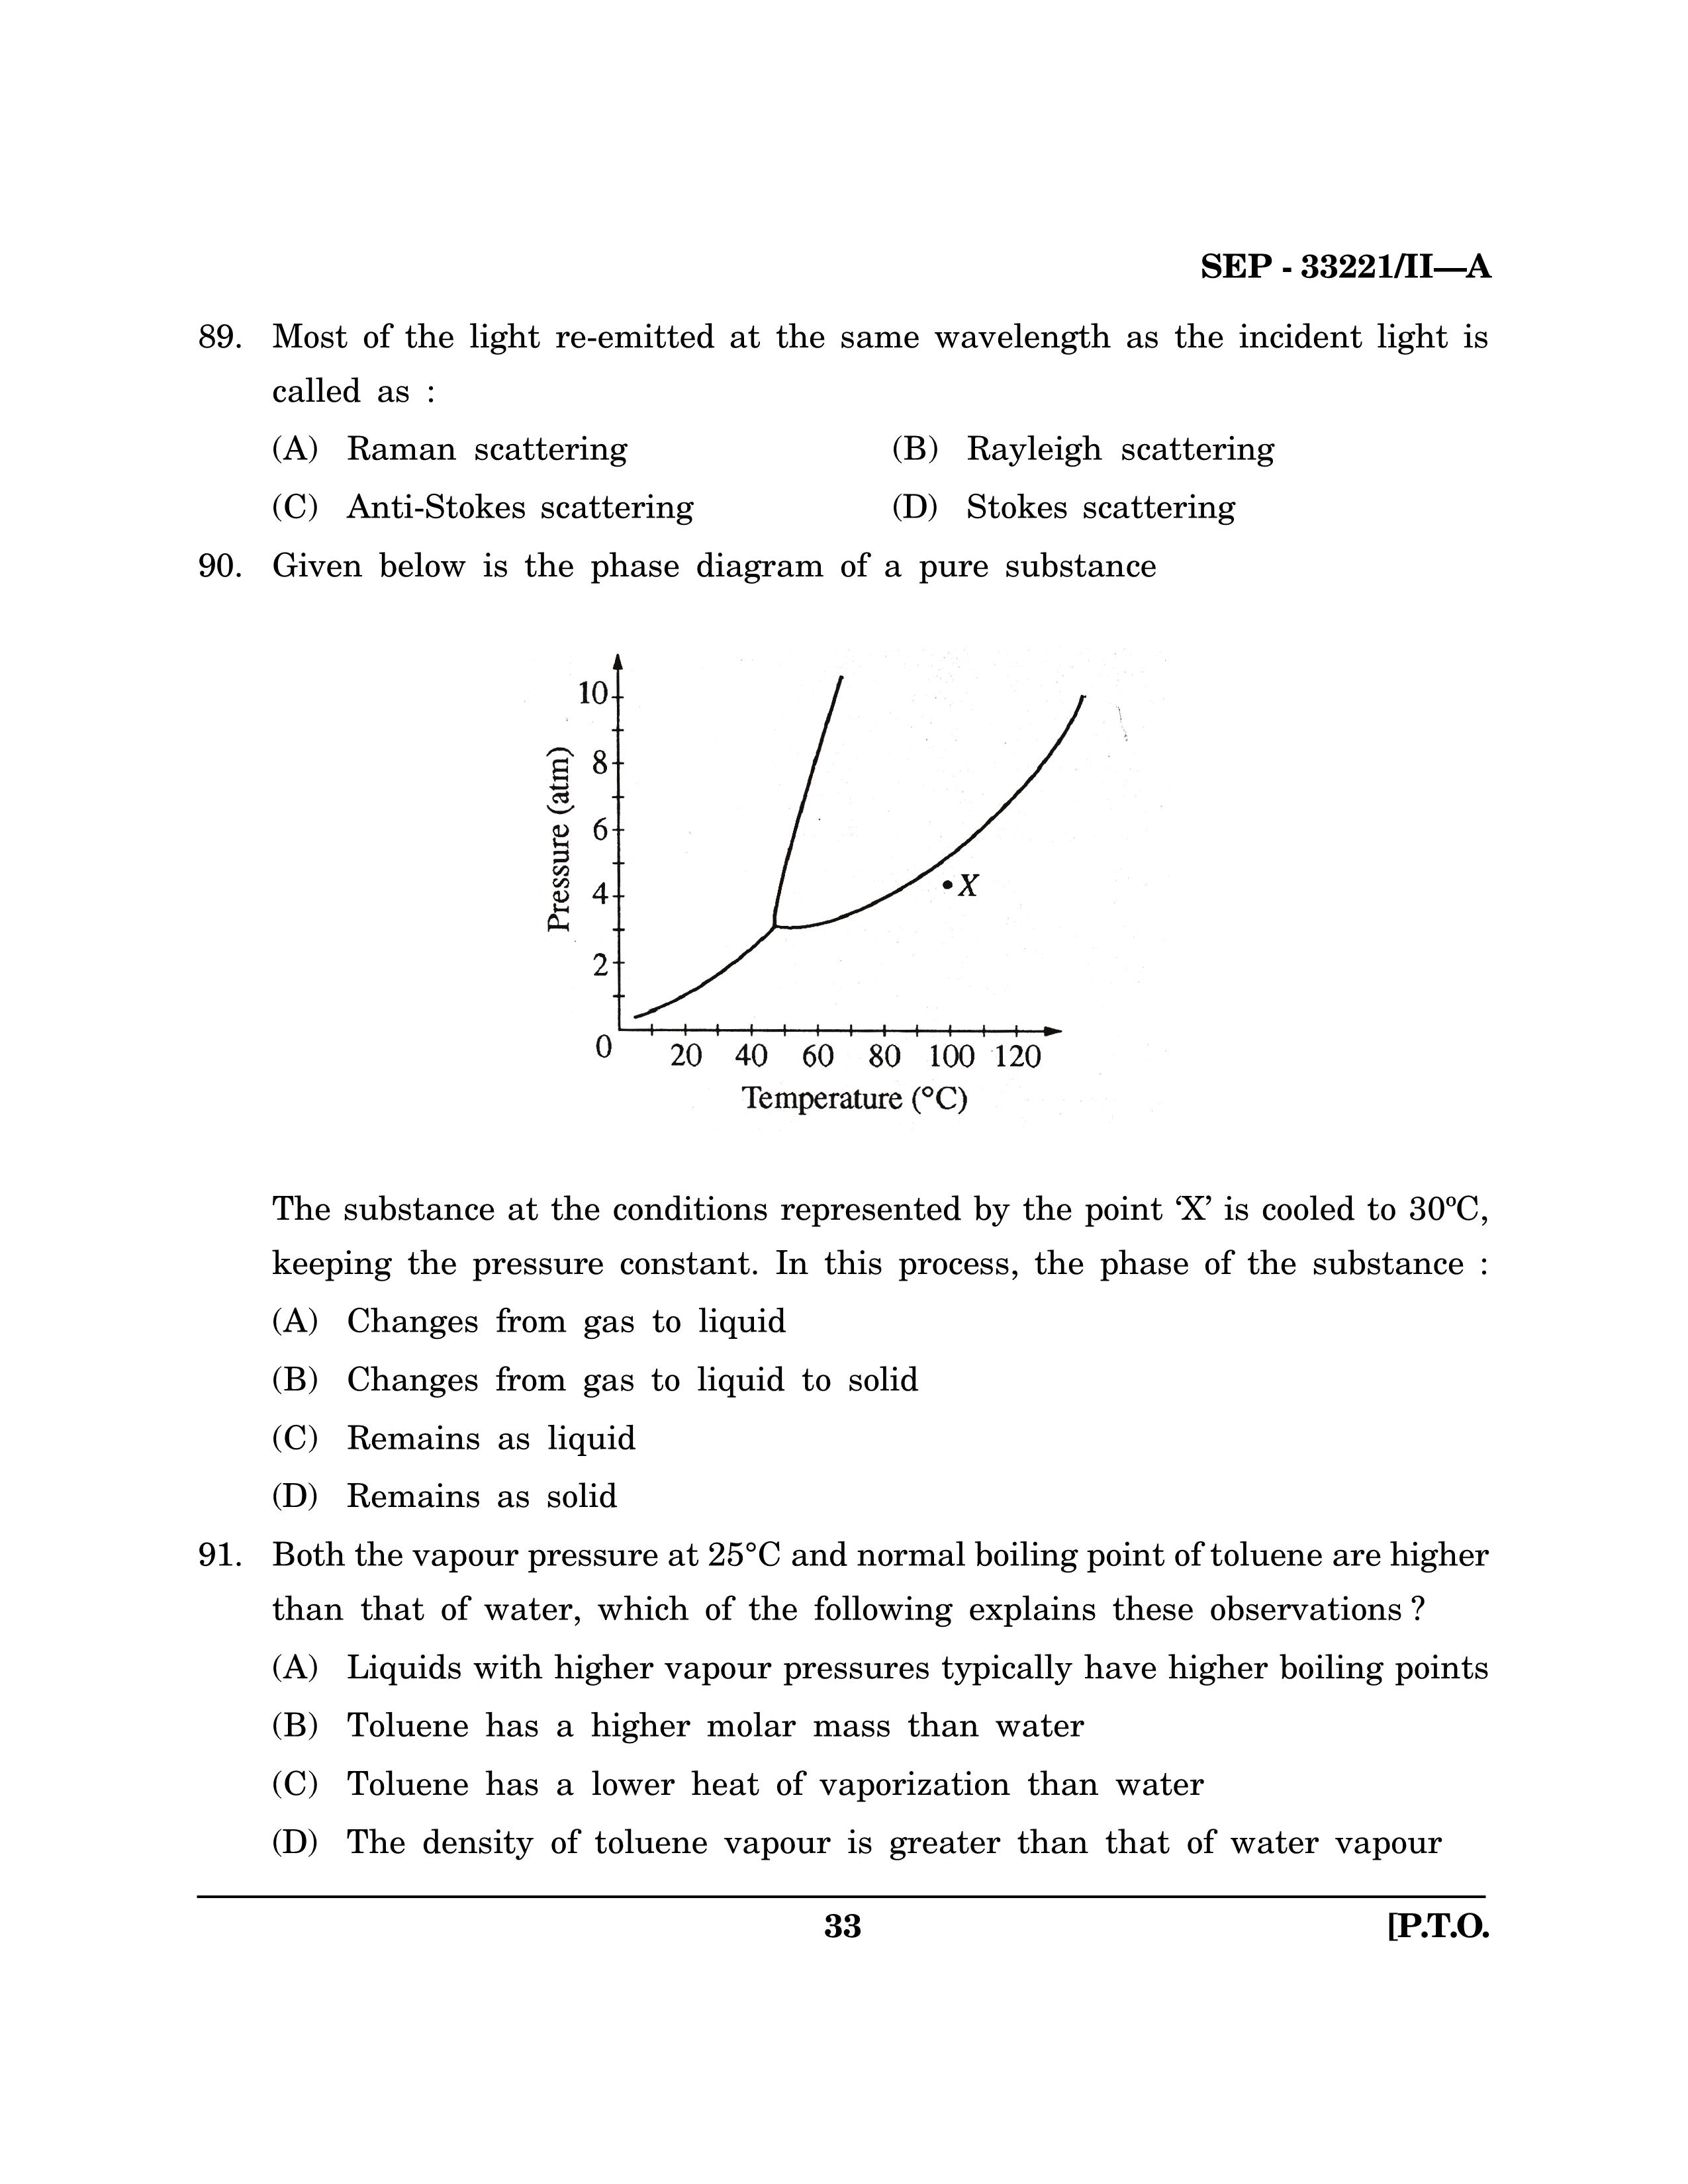 Maharashtra SET Chemical Sciences Exam Question Paper September 2021 32